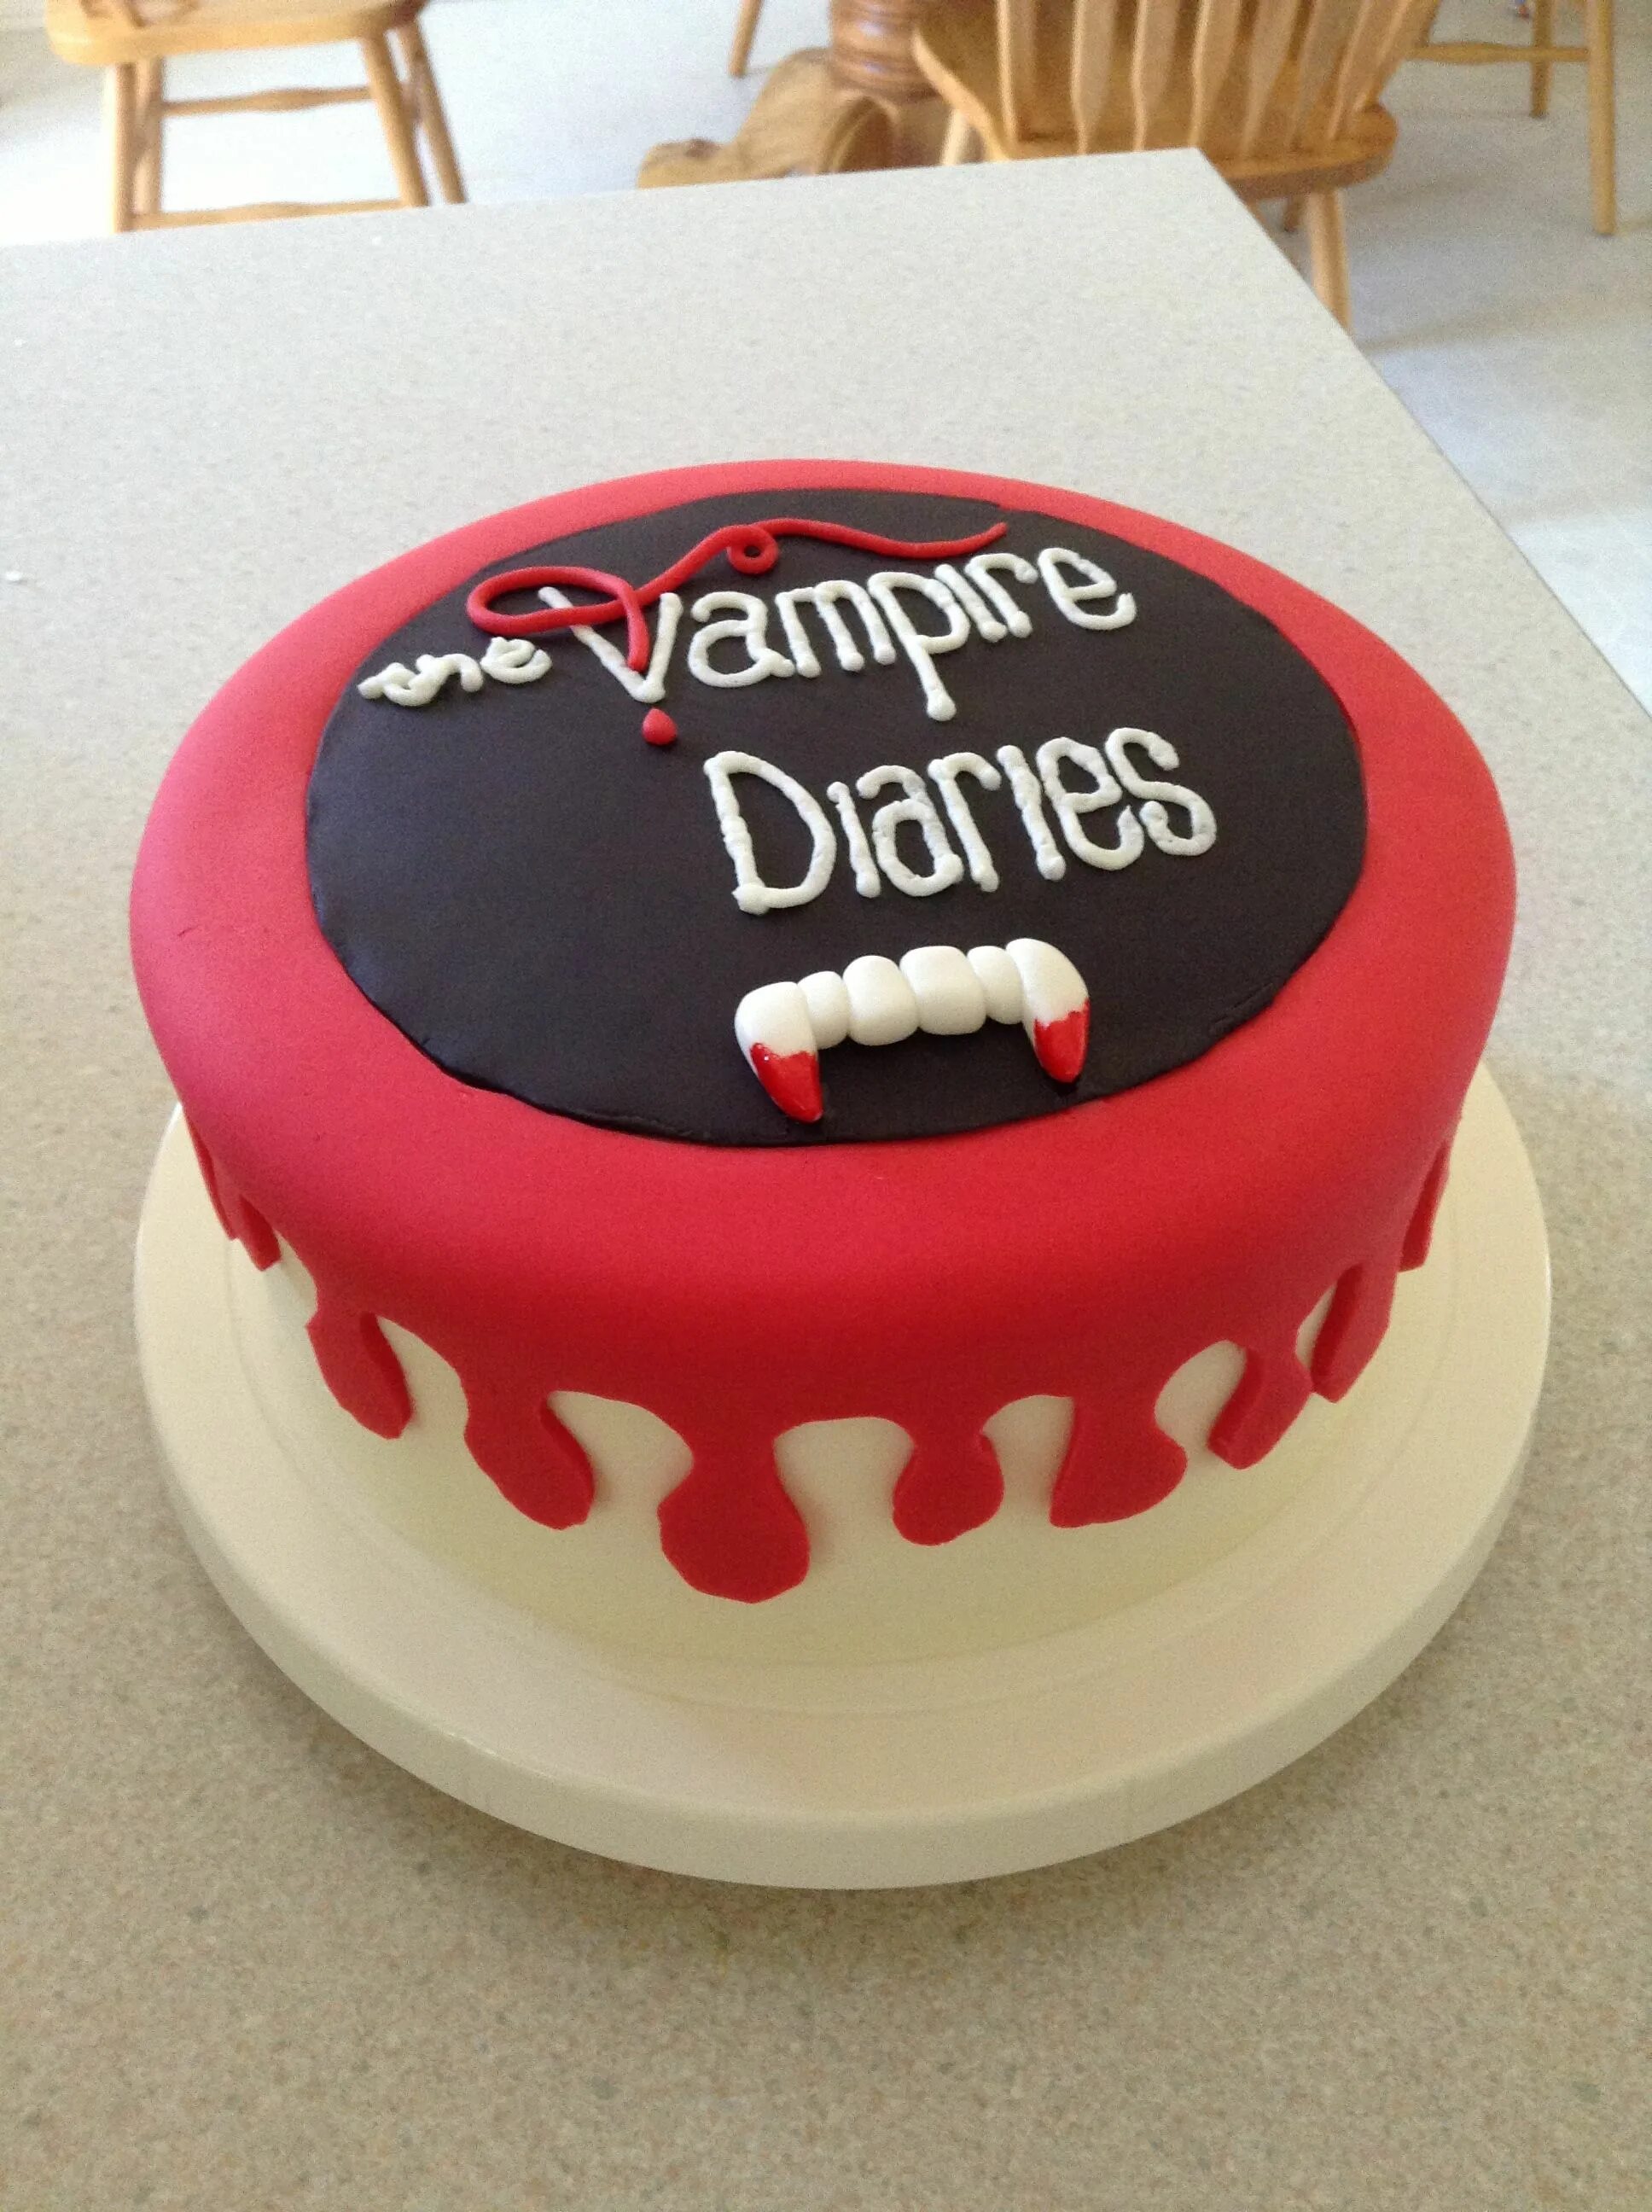 This is my cake. Торт дневники вампира. Торт в стиле дневники вампира. Торт на день рождения в стиле Дневников вампира. Тортик дневники вампира.